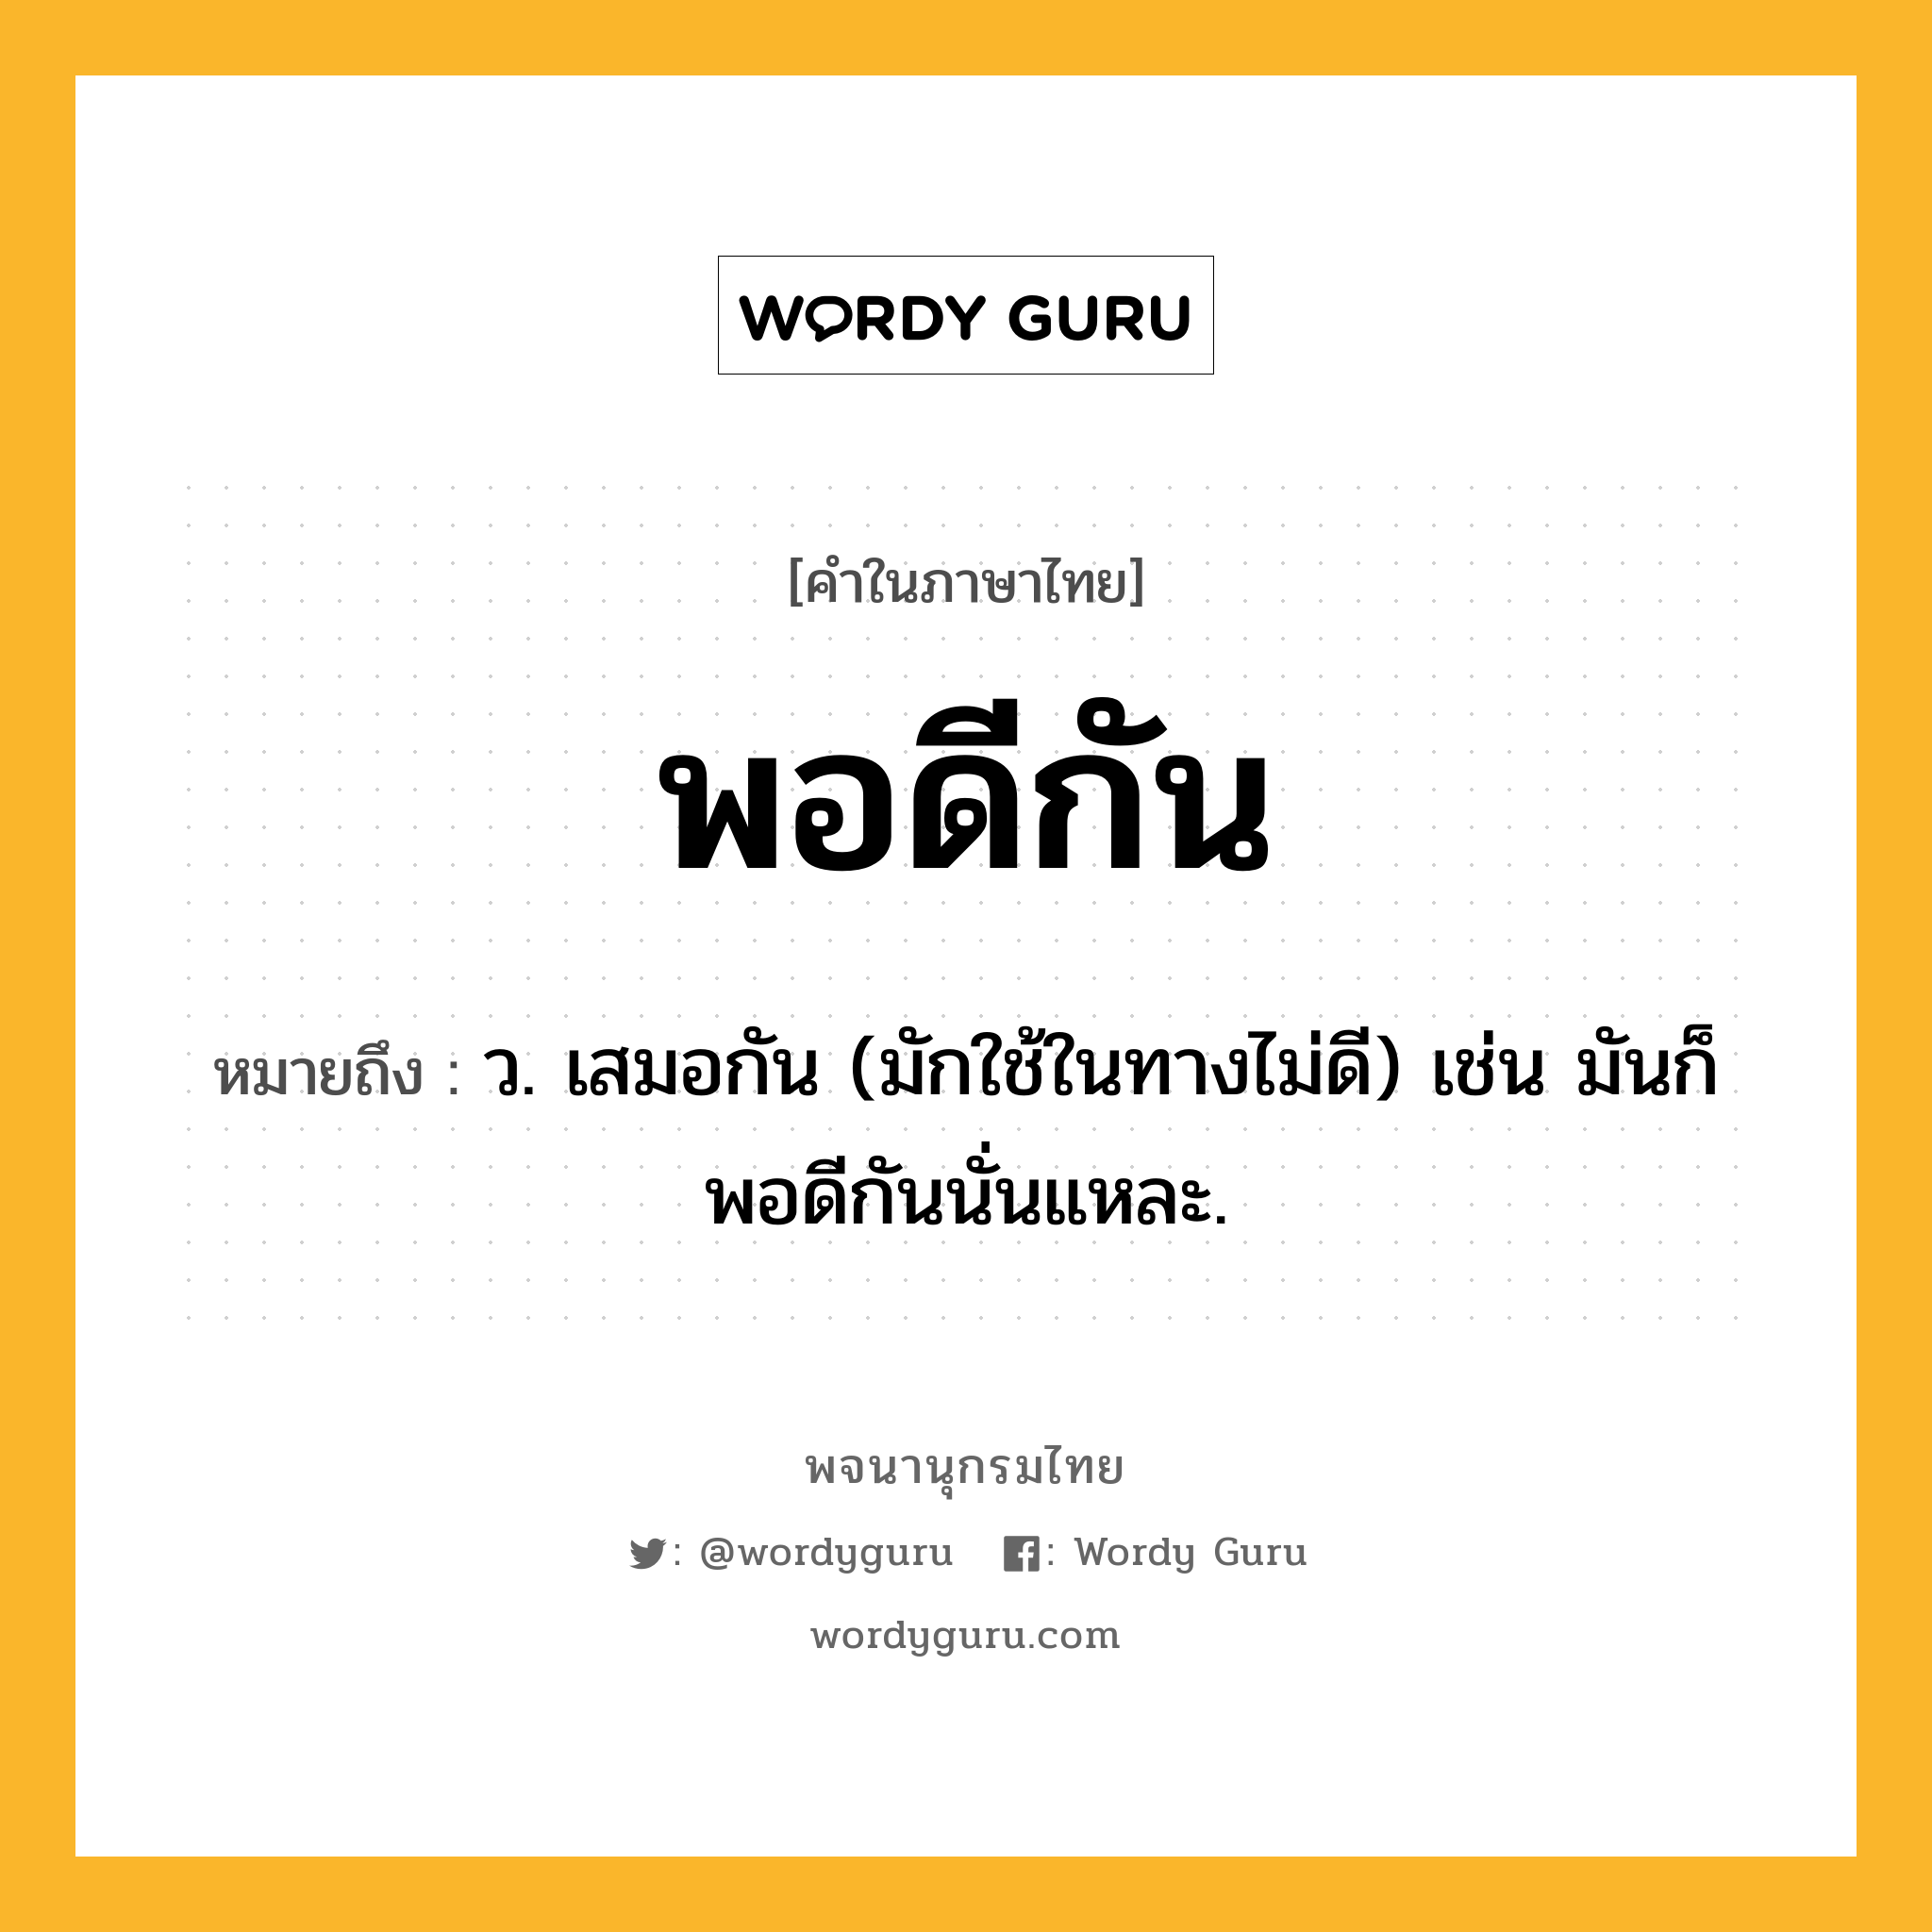 พอดีกัน ความหมาย หมายถึงอะไร?, คำในภาษาไทย พอดีกัน หมายถึง ว. เสมอกัน (มักใช้ในทางไม่ดี) เช่น มันก็พอดีกันนั่นแหละ.